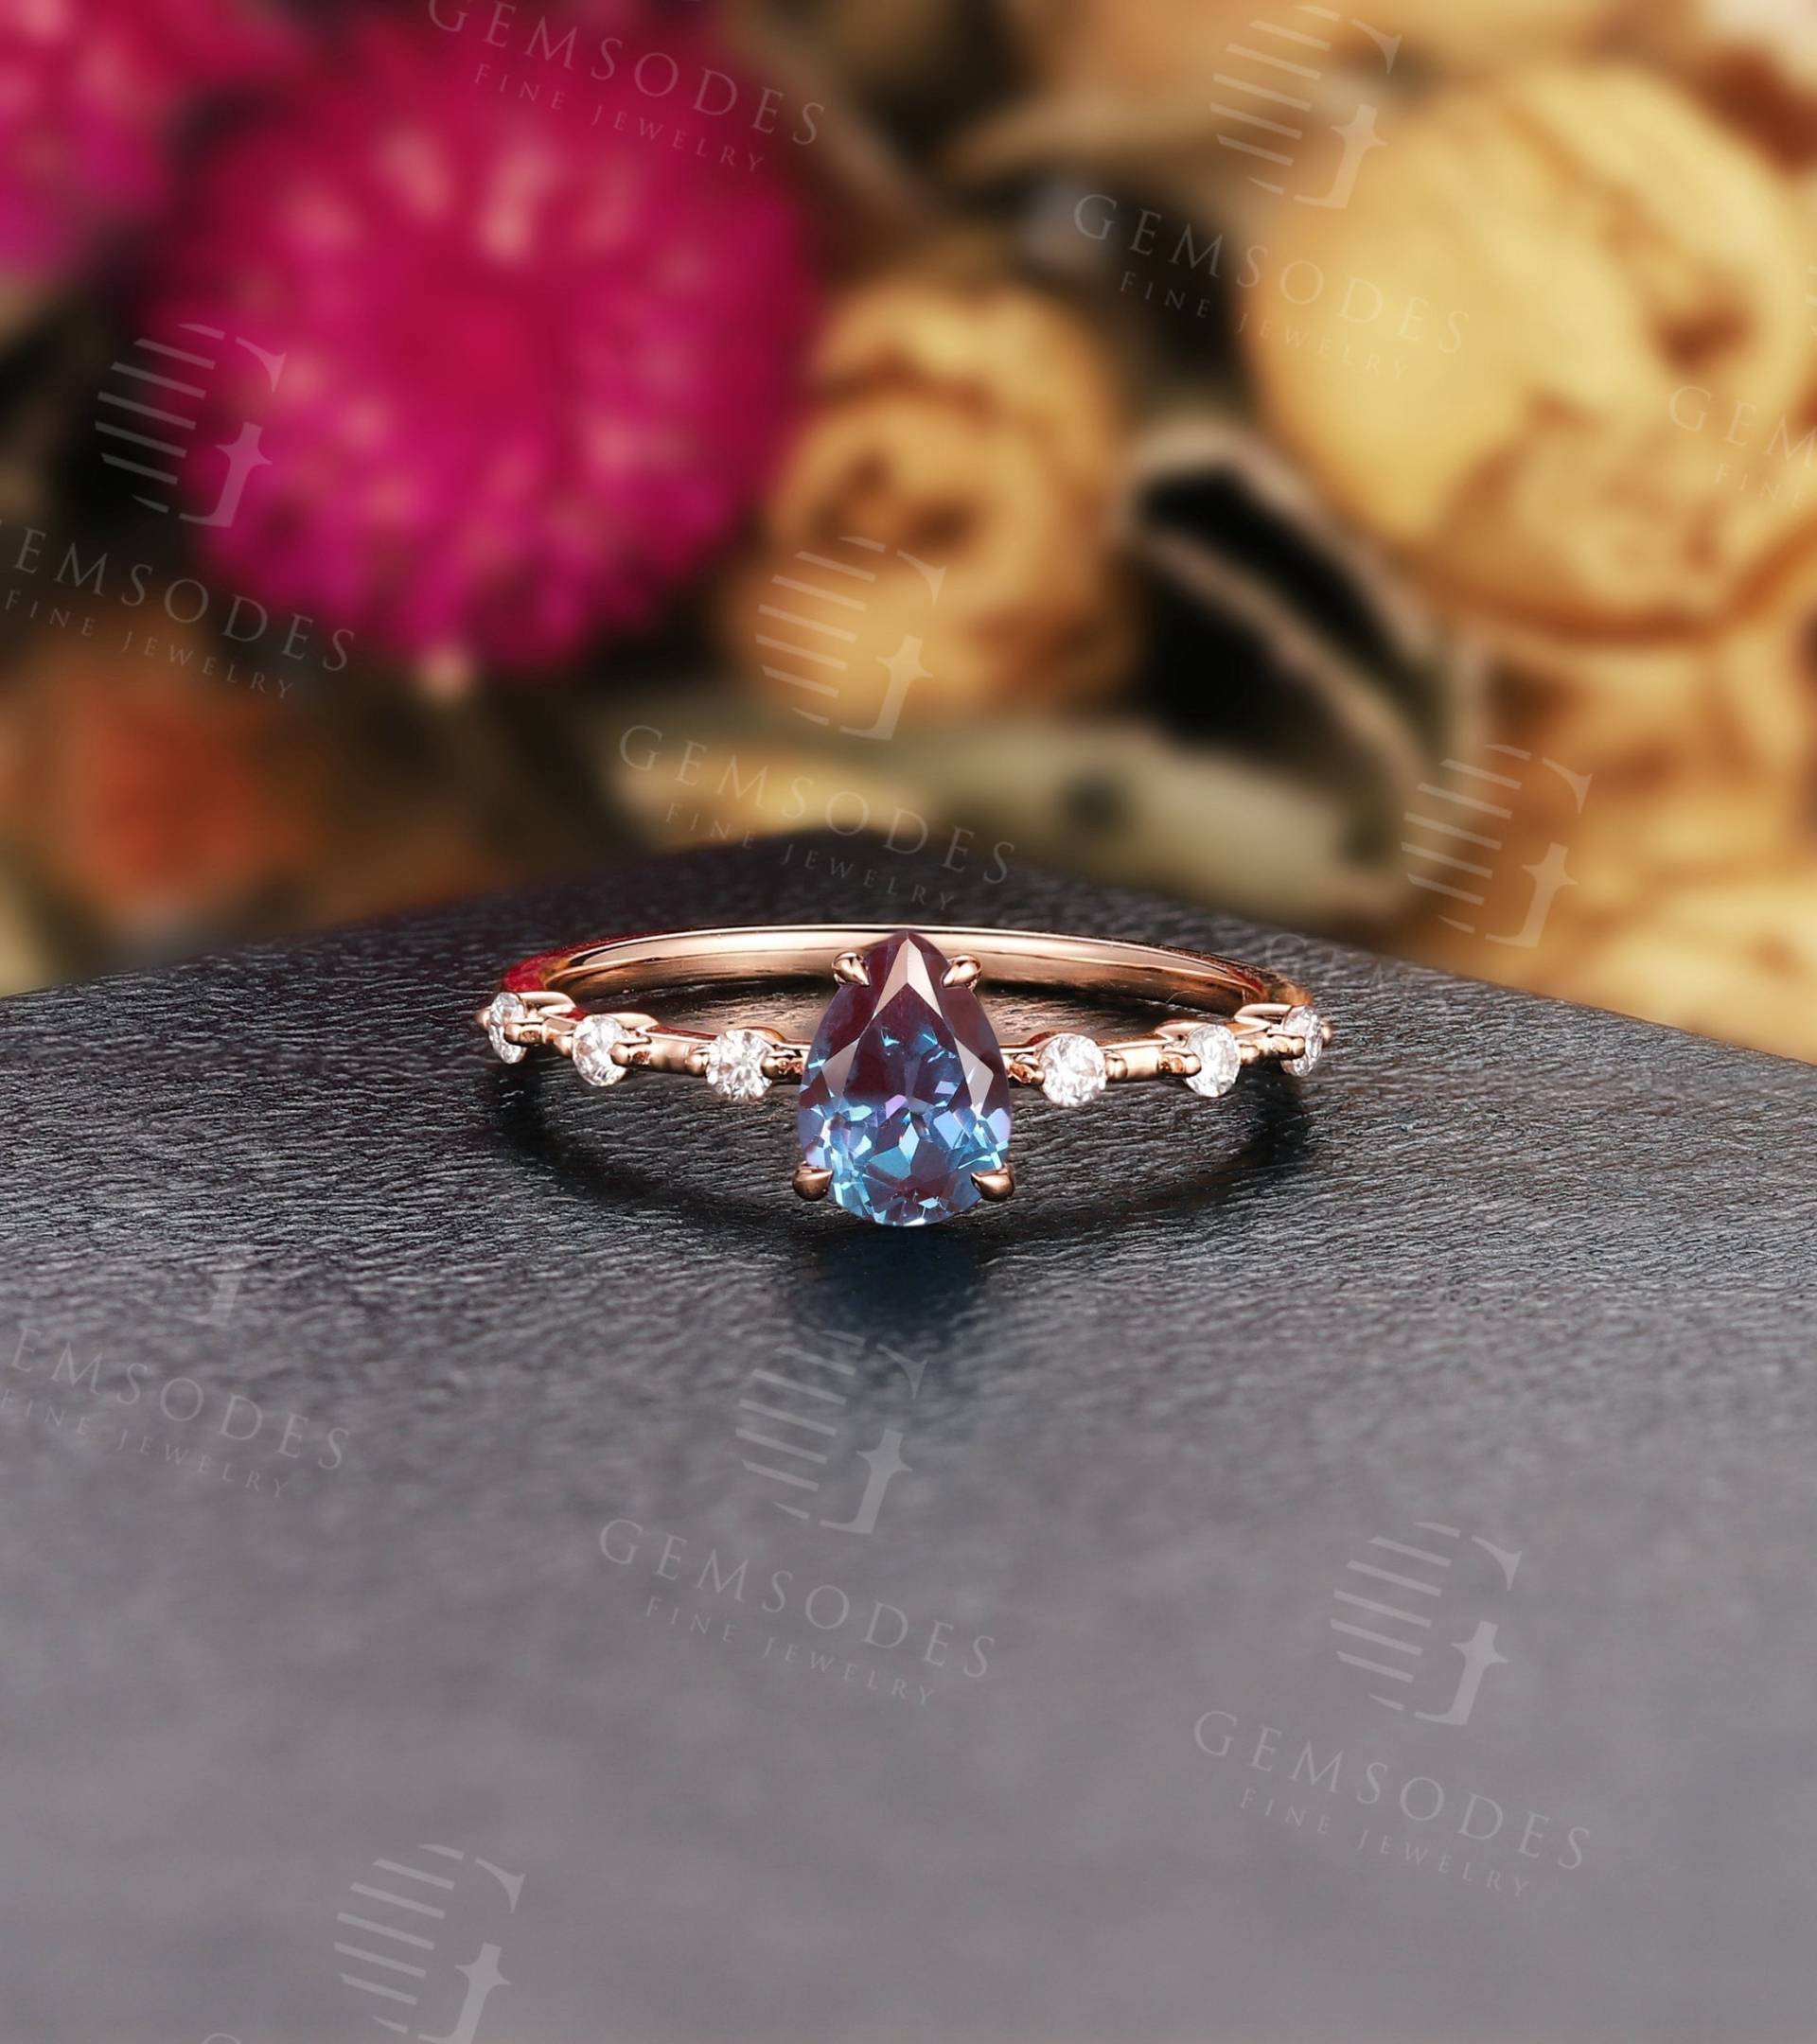 Vintage Alexandrit Verlobungsring | Art Deco Roségold Ehering Antiker Brautring Im Birnenschliff Versprechens-Jubiläums-Versprechen-Ring von GemsOdes